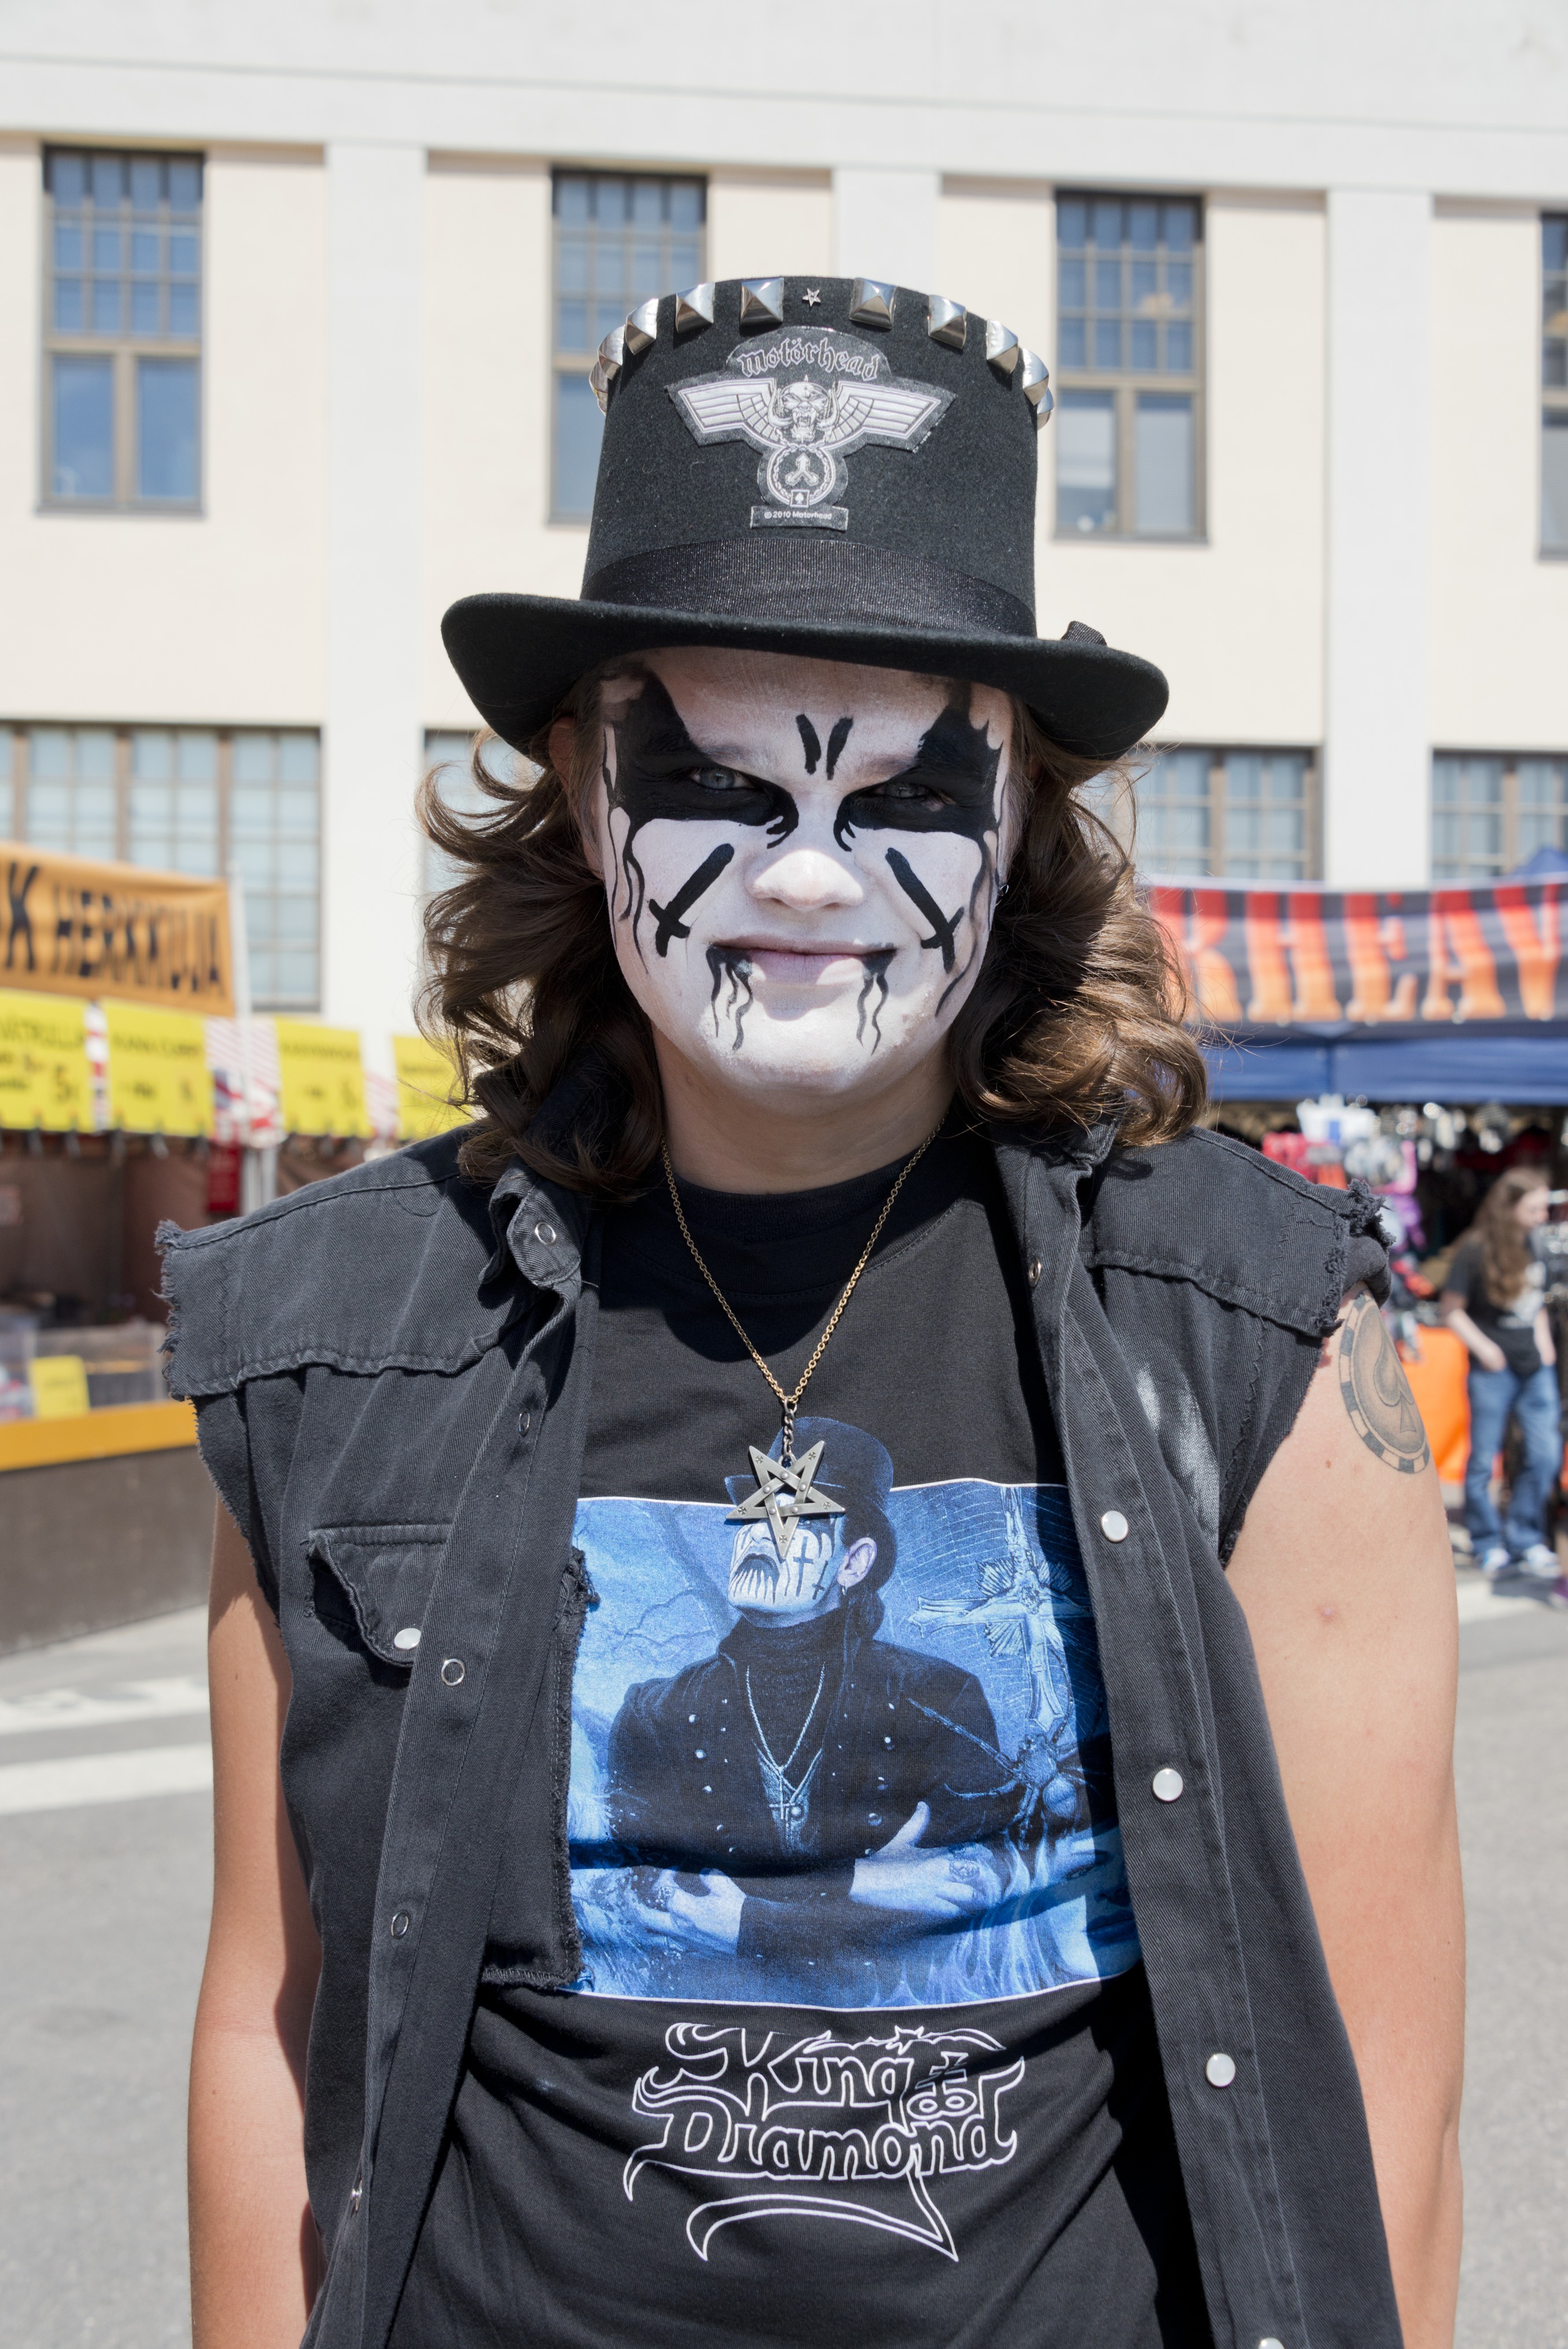 Metallimusiikkifani. Vuoden 2013 Tuska-festivaalin aloituspäivän pääesiintyjä on progressiivista heavy/black metallia esittävä King Diamond. Moni King Diamondia fanittava festivaalikävijä on maalannut kasvoihinsa samankaltaiset maskit kuin hänellä.